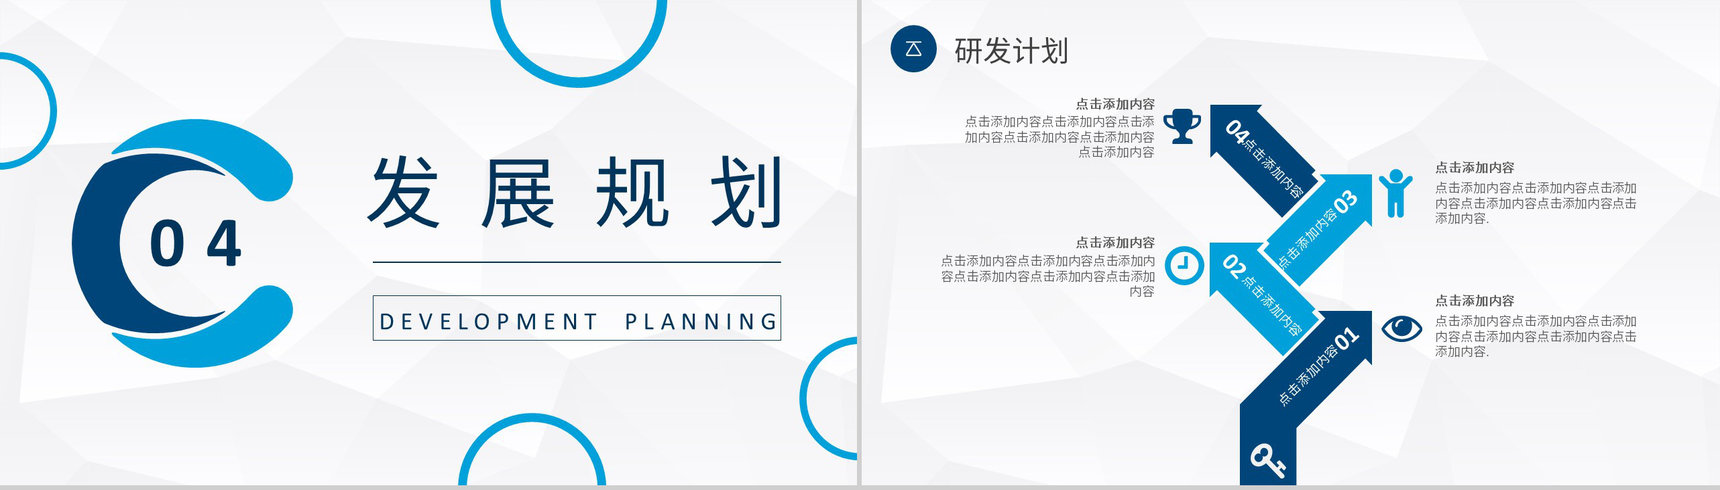 房产项目宣传演讲公司房产业务介绍营销发展计划PPT模板-10